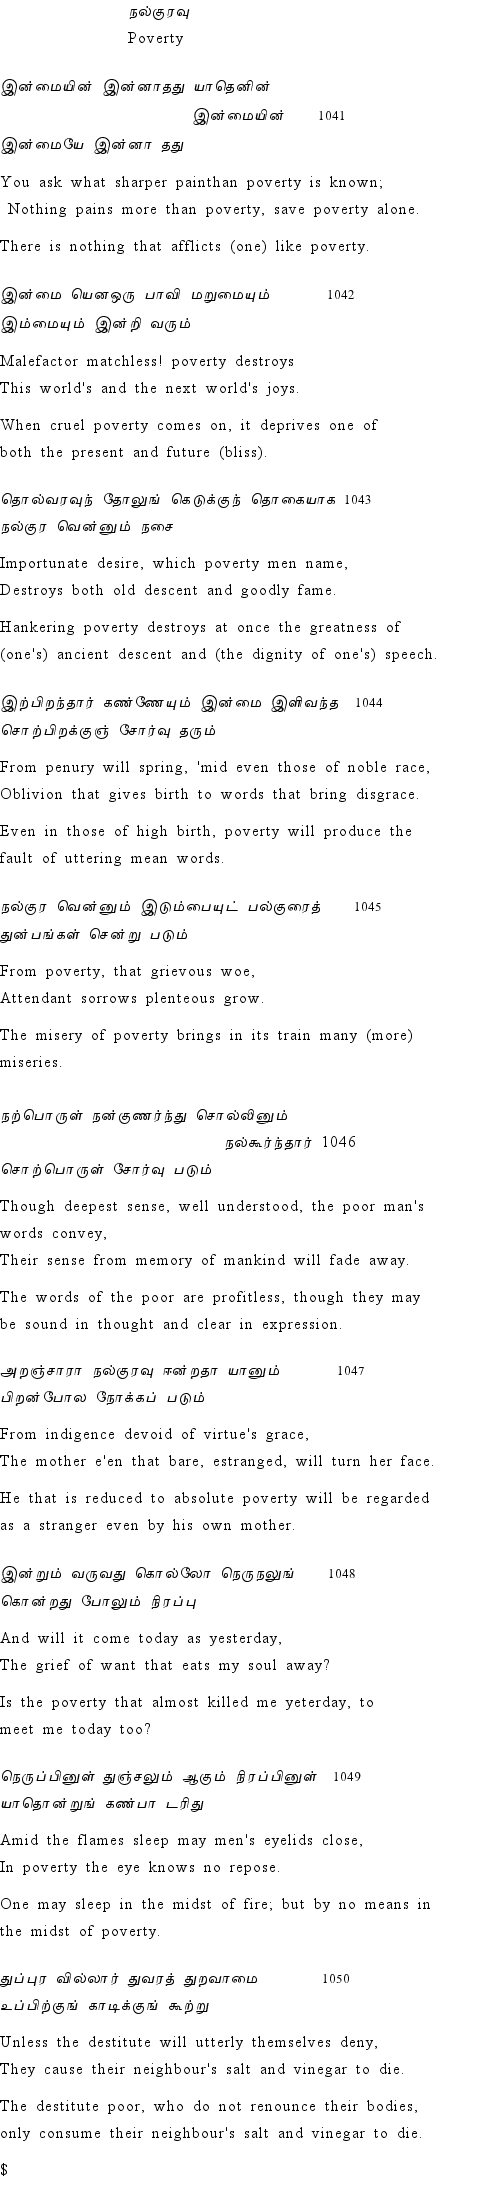 Text of Adhikaram 105